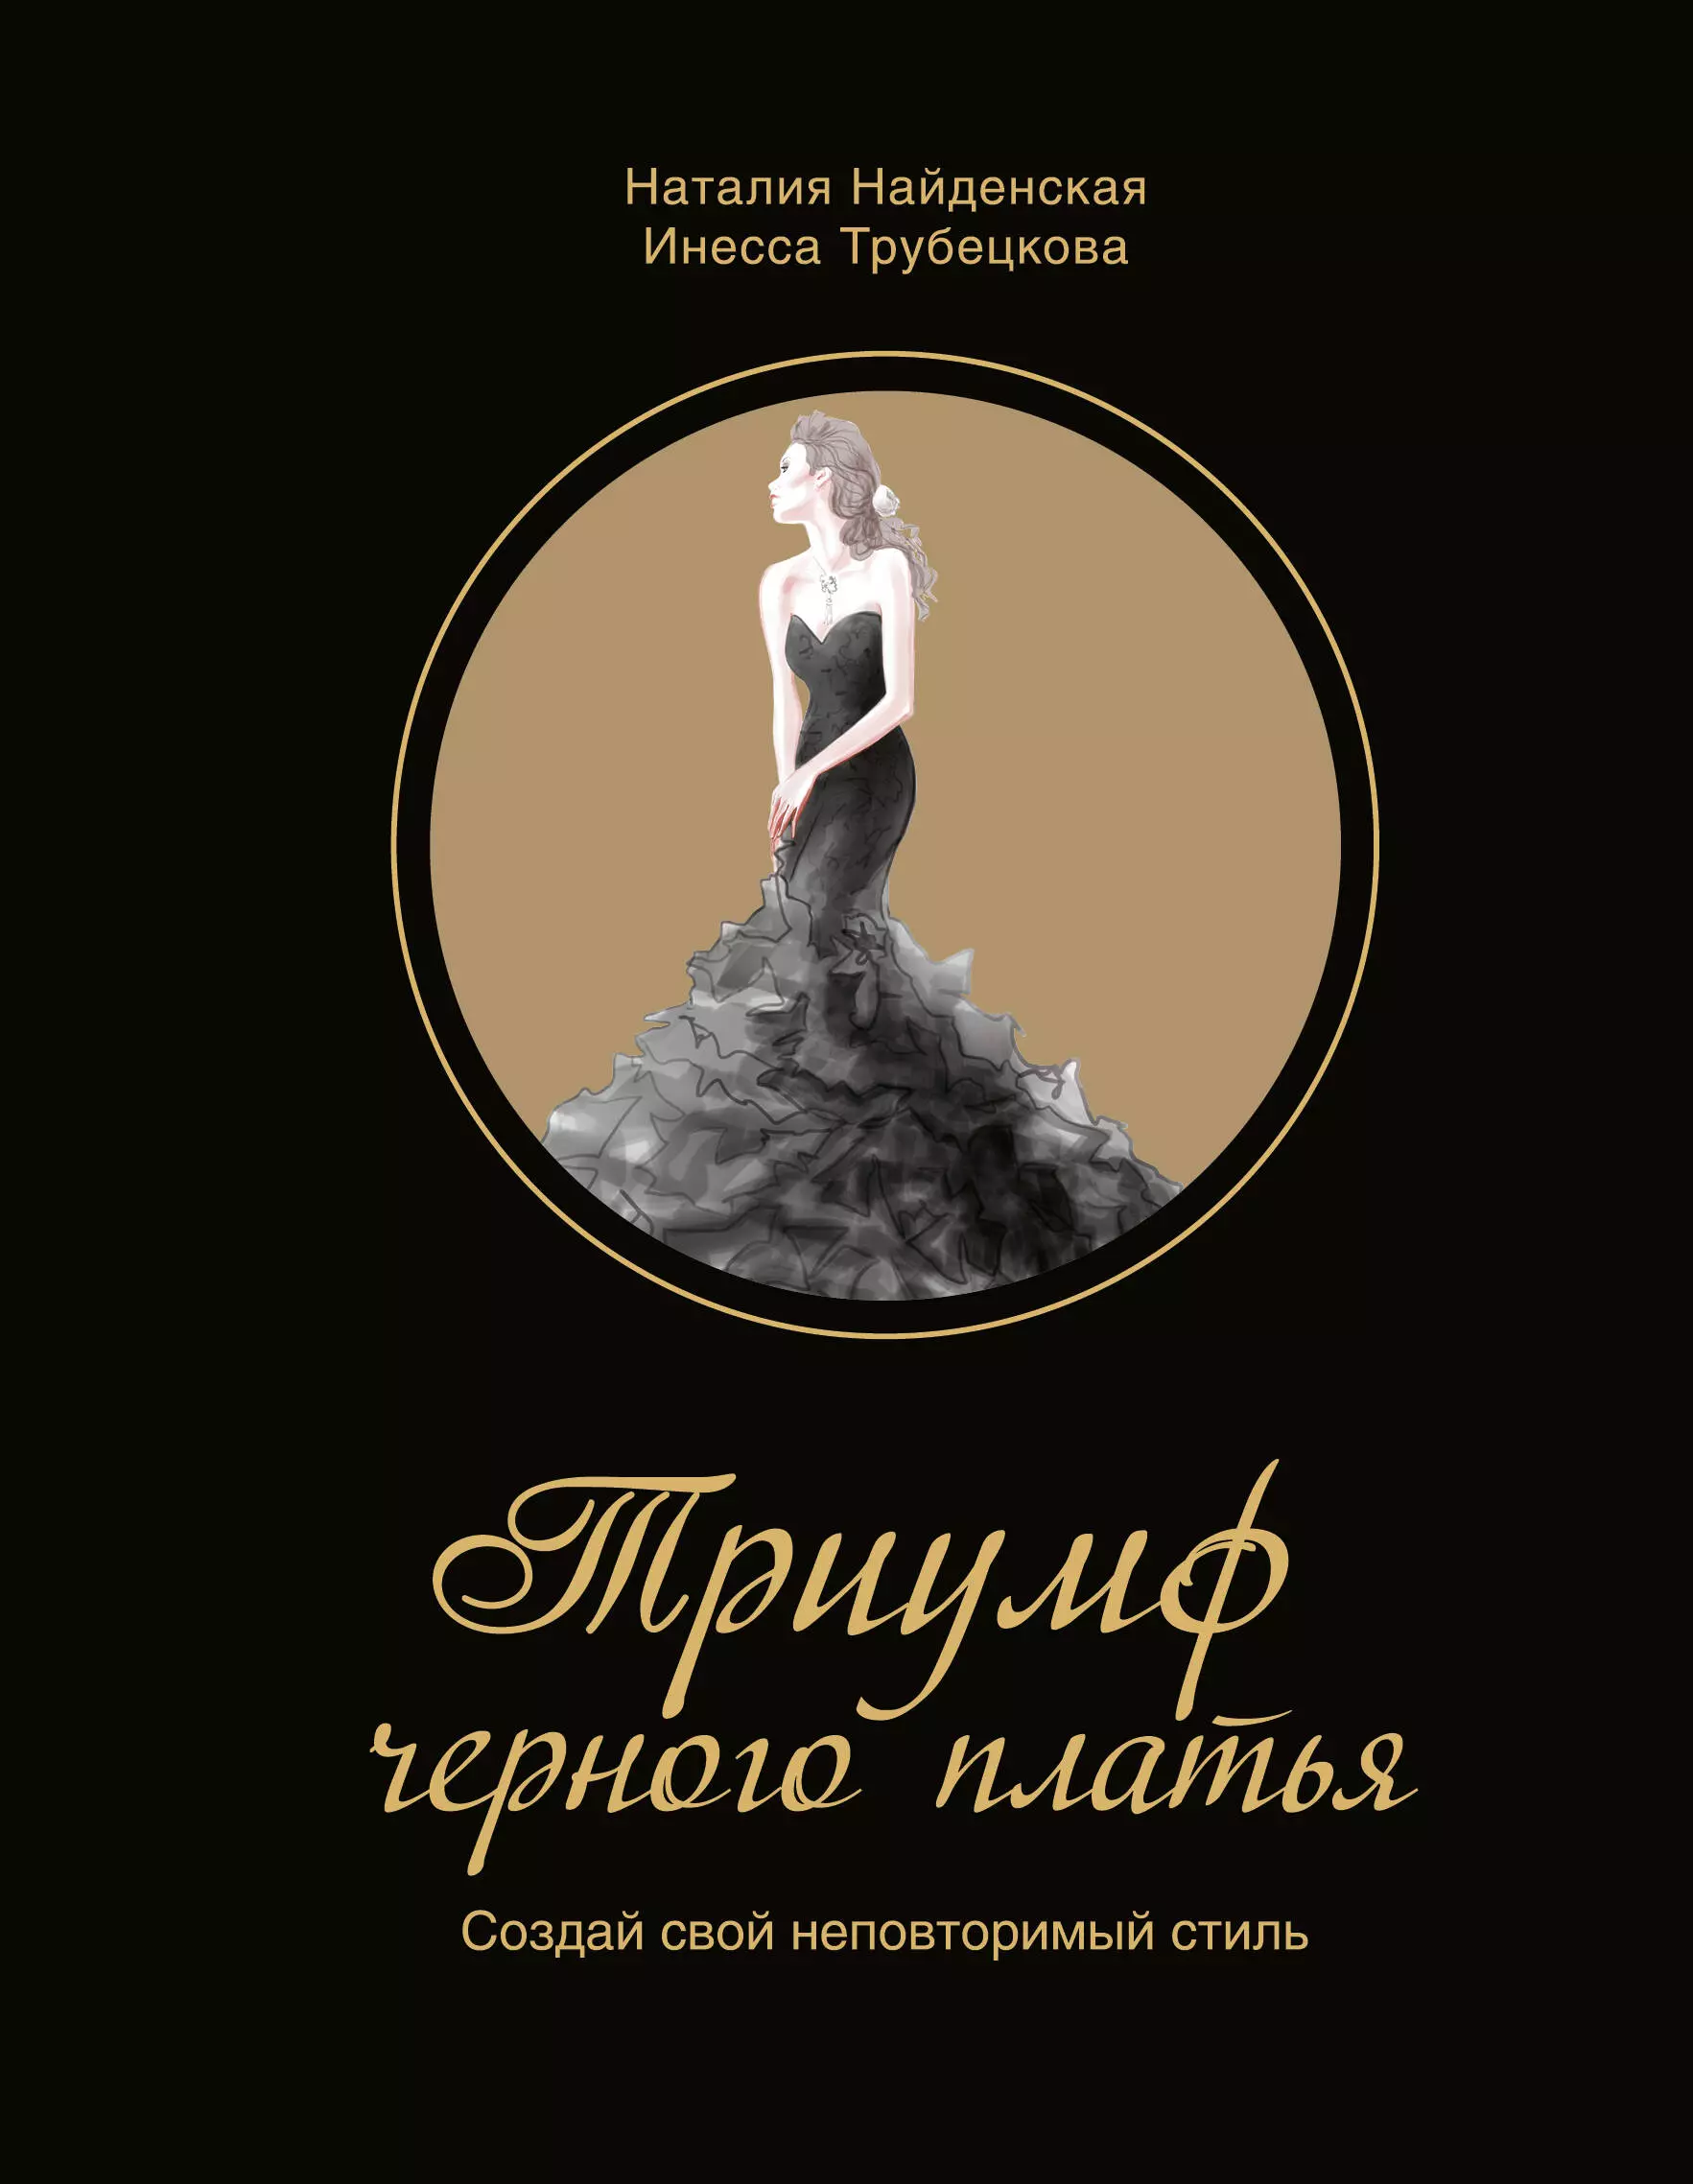 Найденская Наталия Георгиевна - Триумф черного платья. Создай свой неповторимый стиль